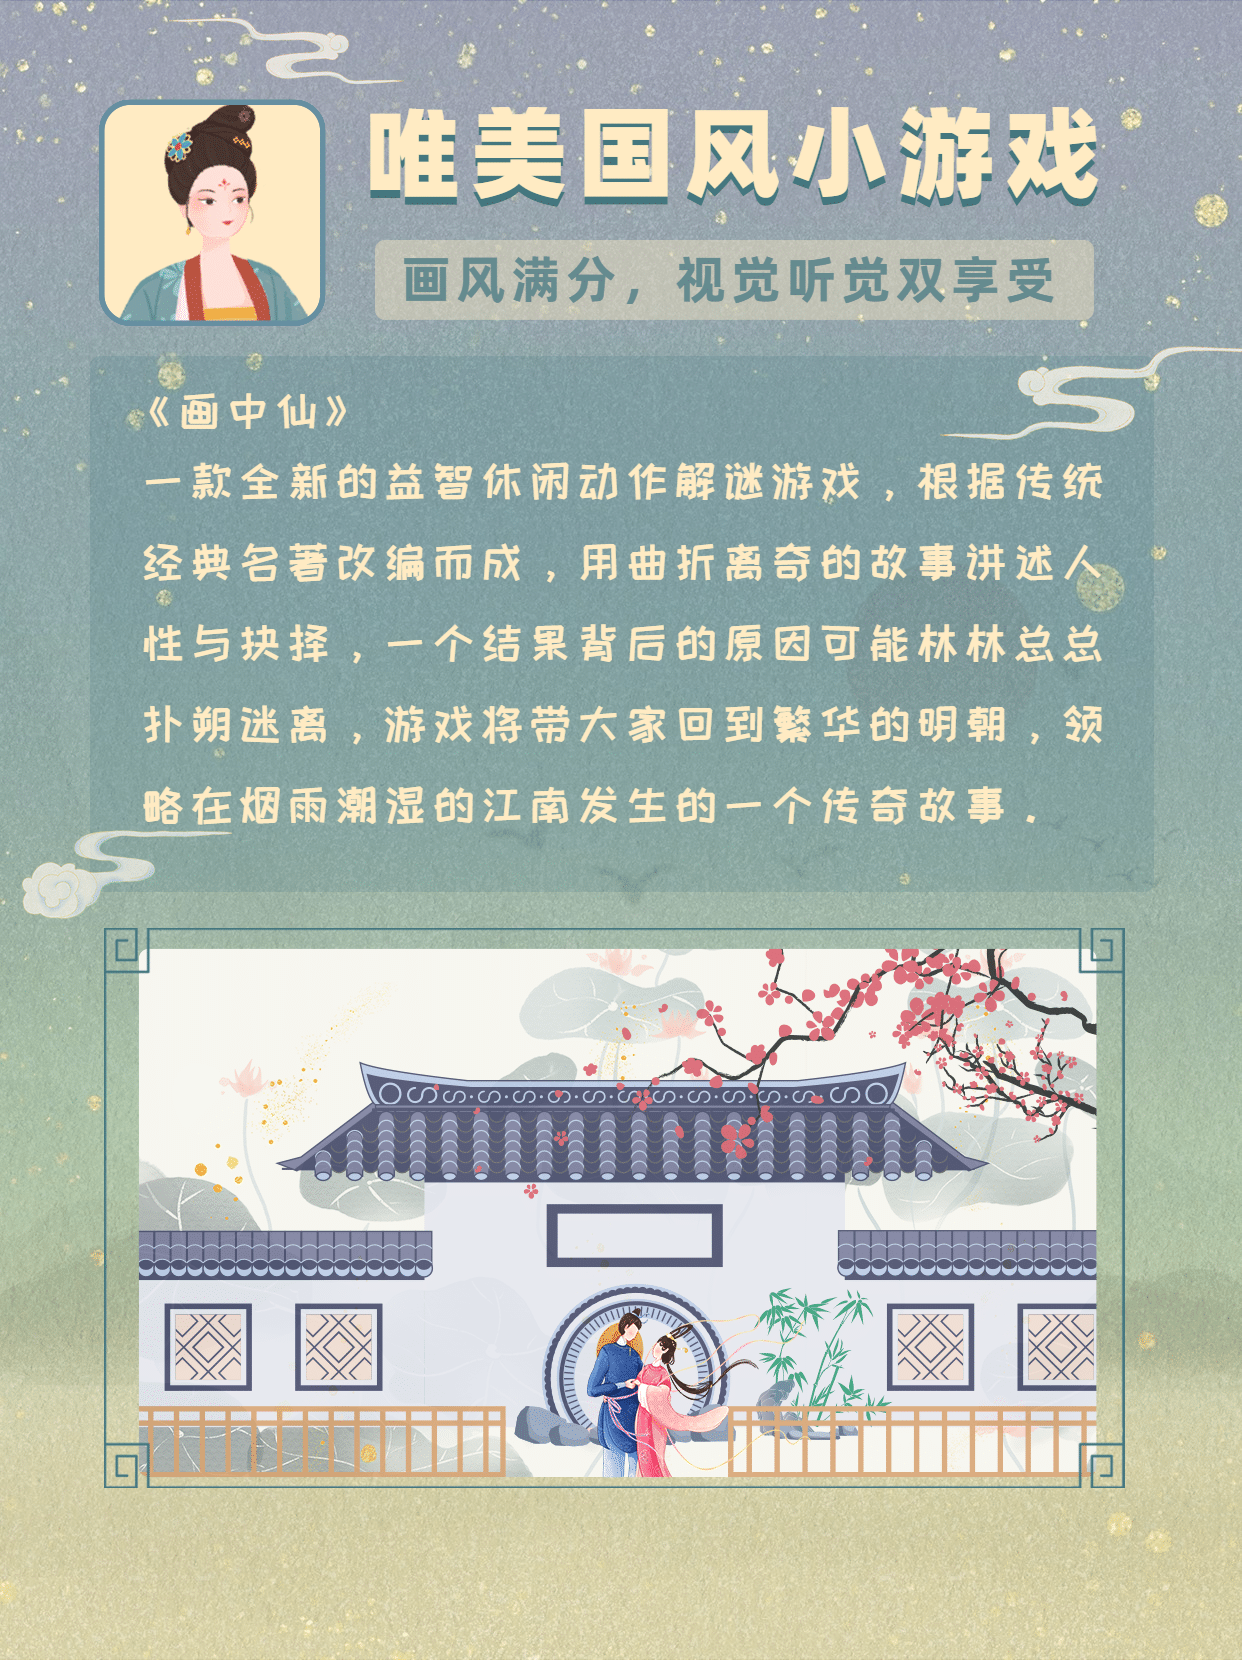 国庆节假期古风游戏小红书封面配图